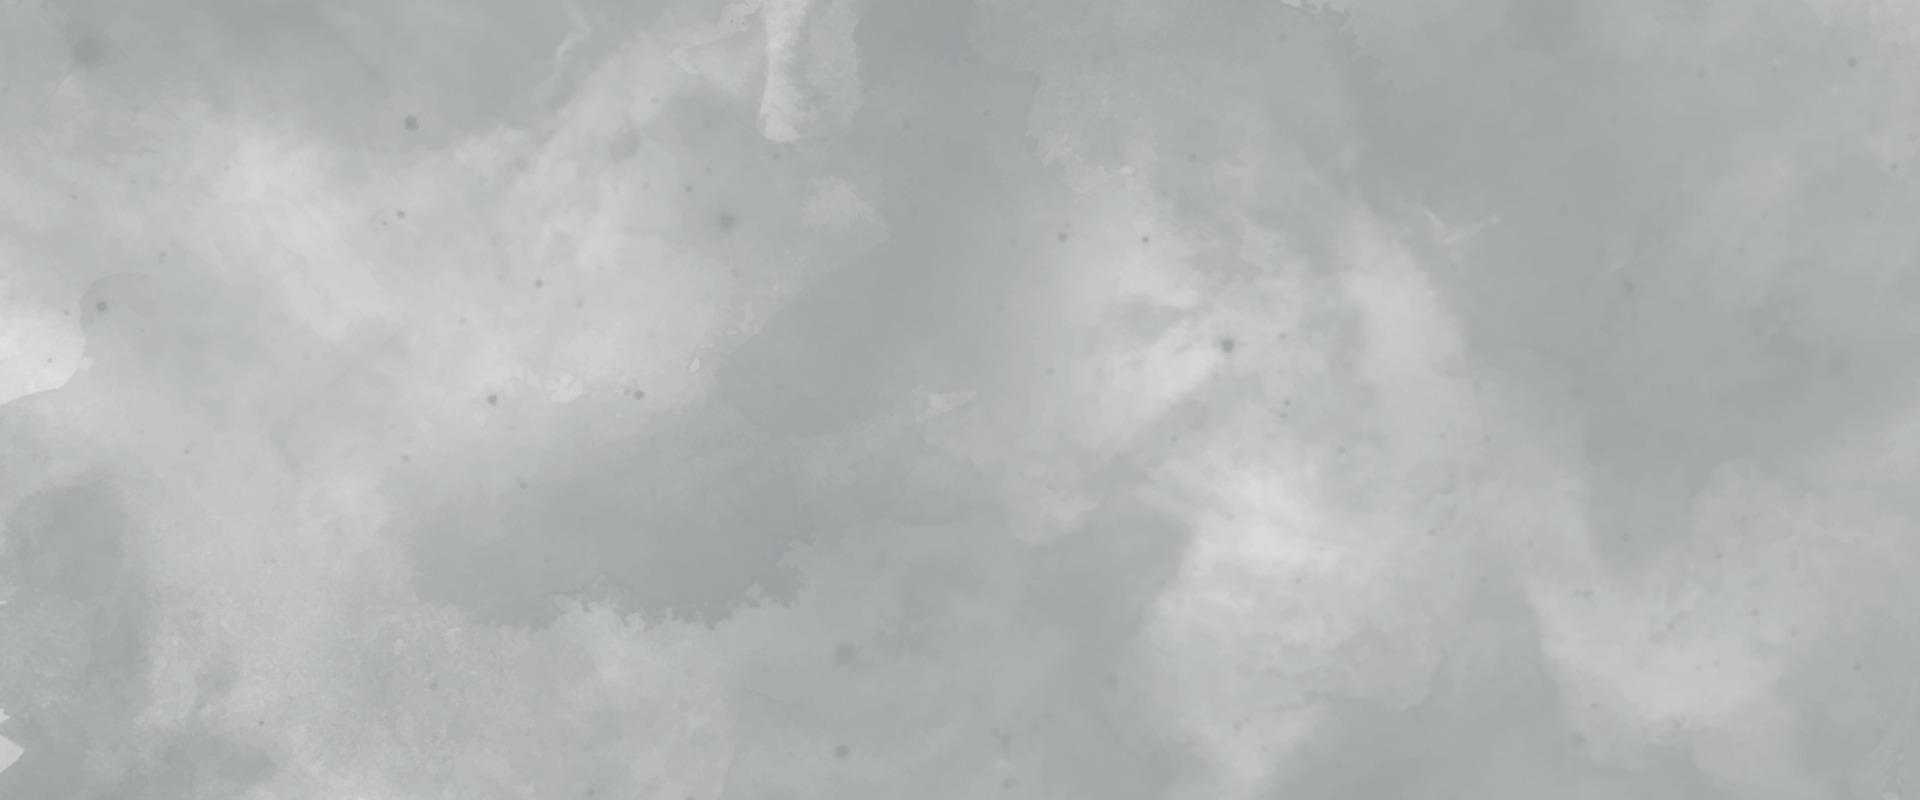 einfarbiges Schwarz-Weiß-Tinteneffekt-Aquarell. Abstract Grunge Grautöne Aquarell Hintergrund. verschmiertes graues aquarellfarbenes papier strukturiert. silberne tinte und aquarelltexturen auf weißem papier. vektor